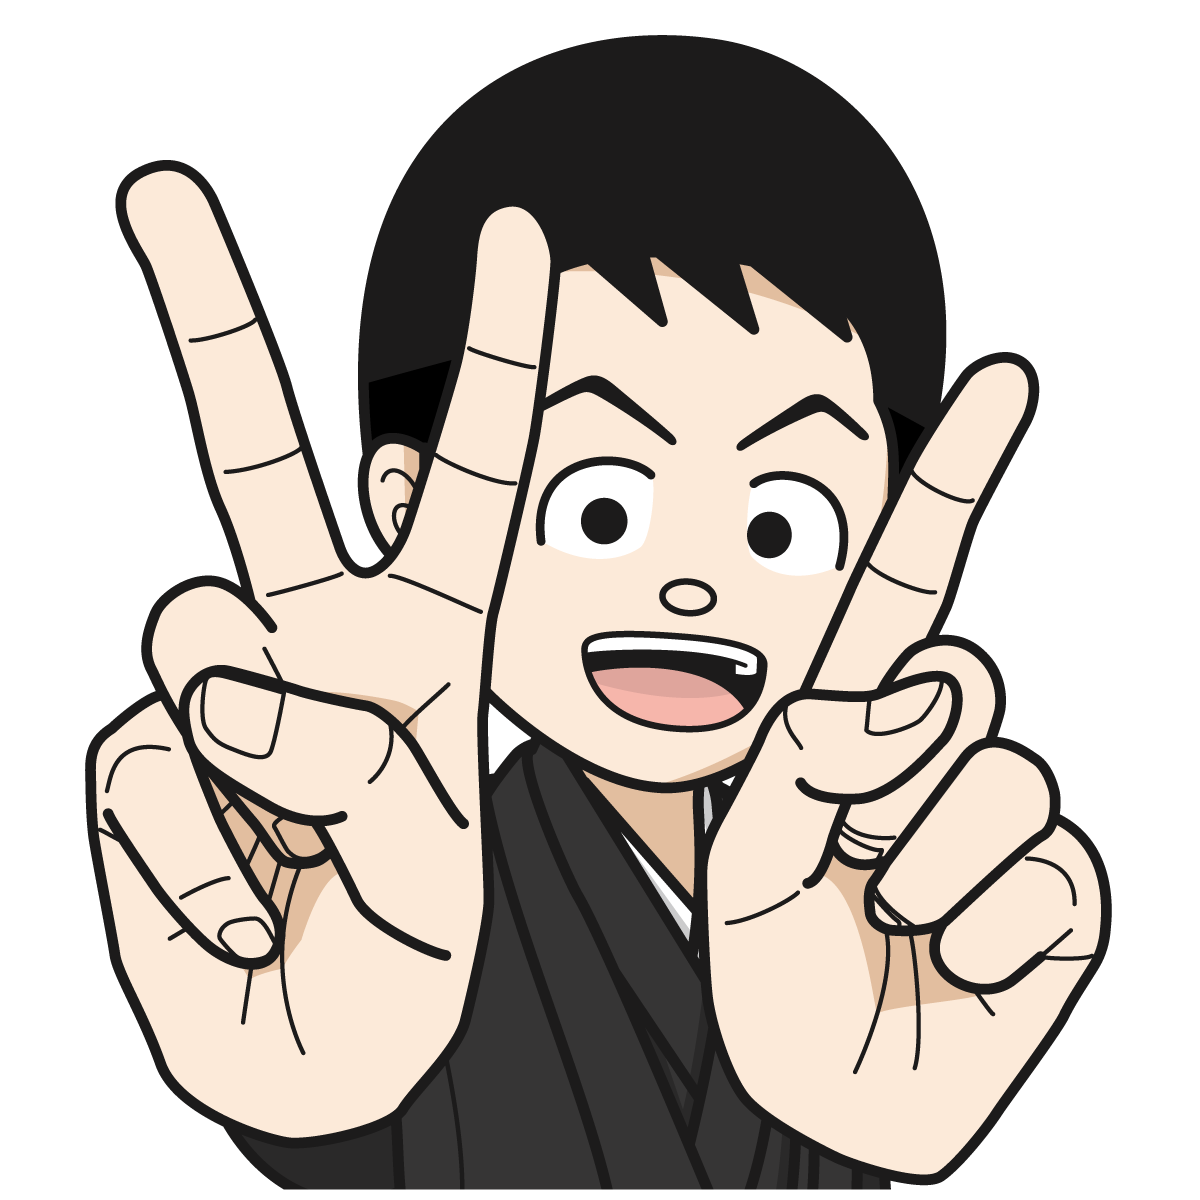 指で 2 と 1 を作り21を示す袴を着た男性17 Mido Kichi